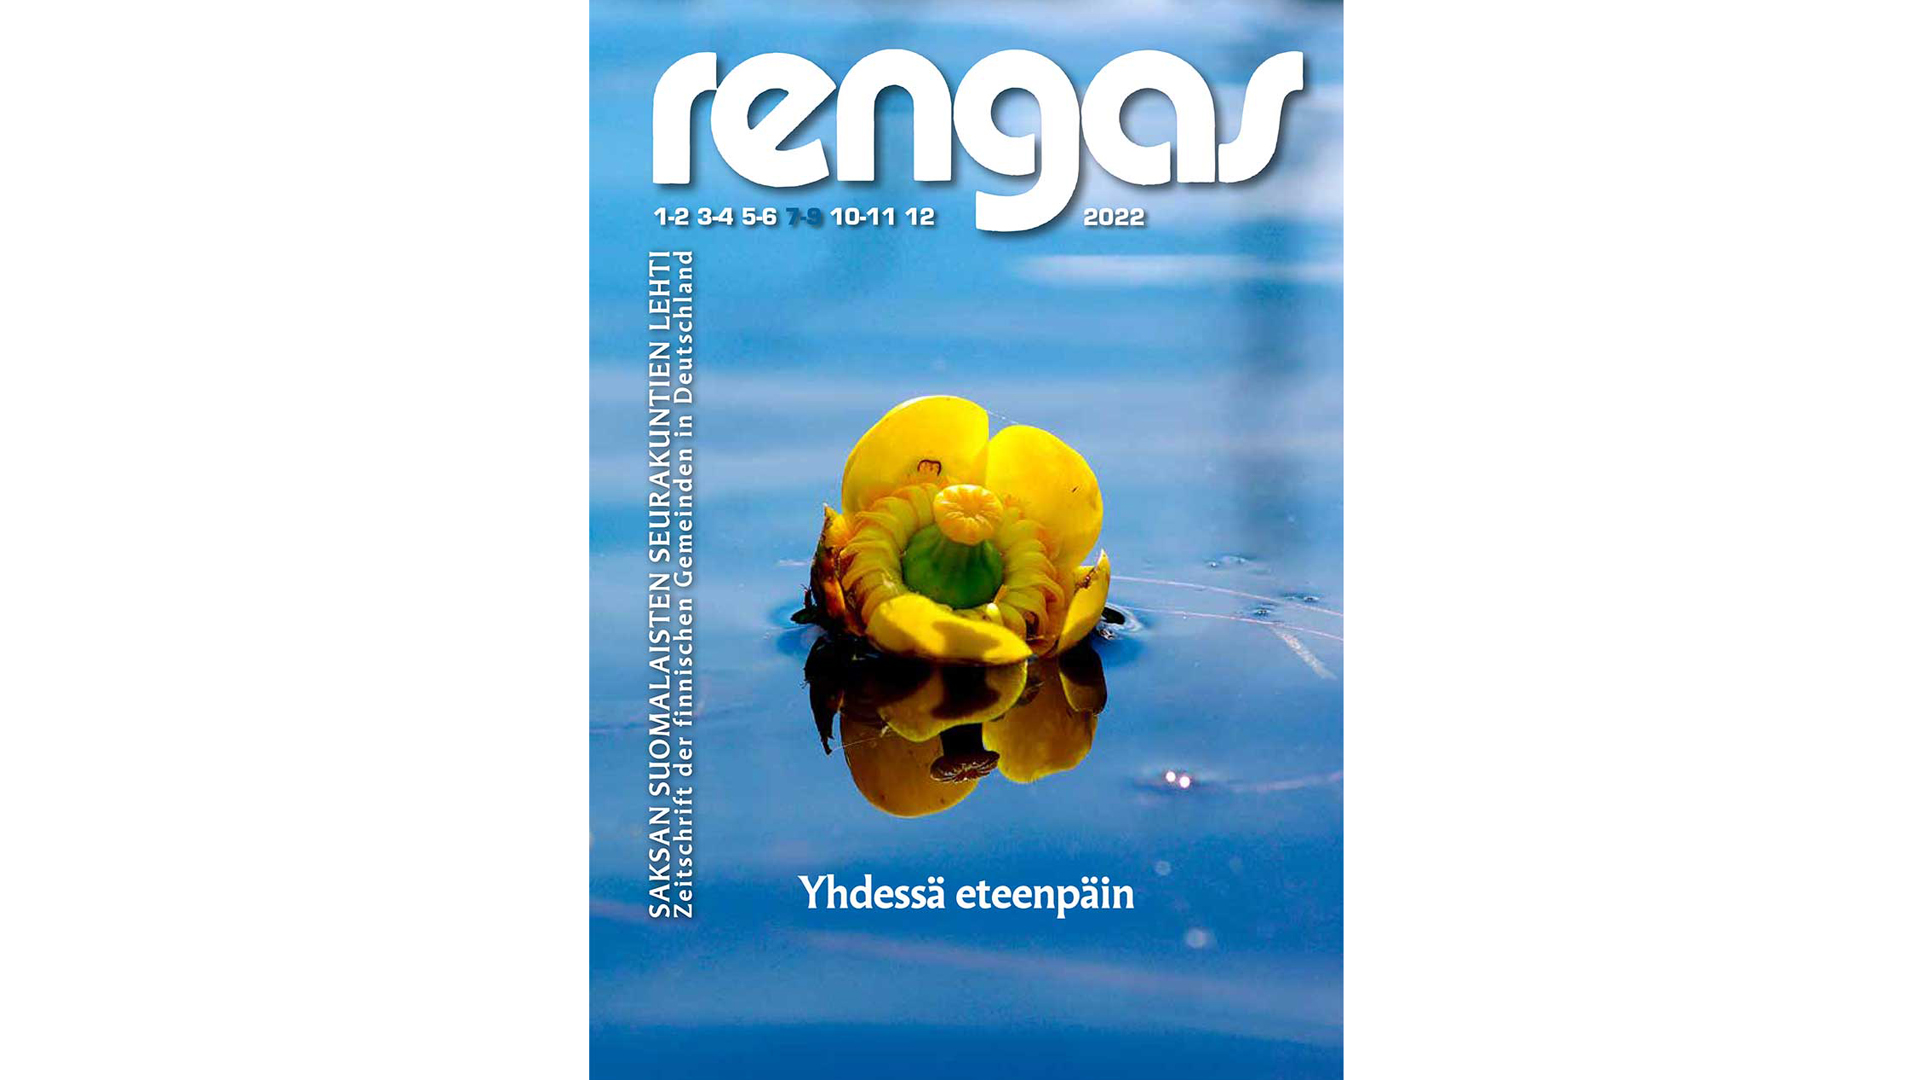 Rengas-lehden 7-9/2022 kansikuva, keltainen ulpukka sinisessä vedessä